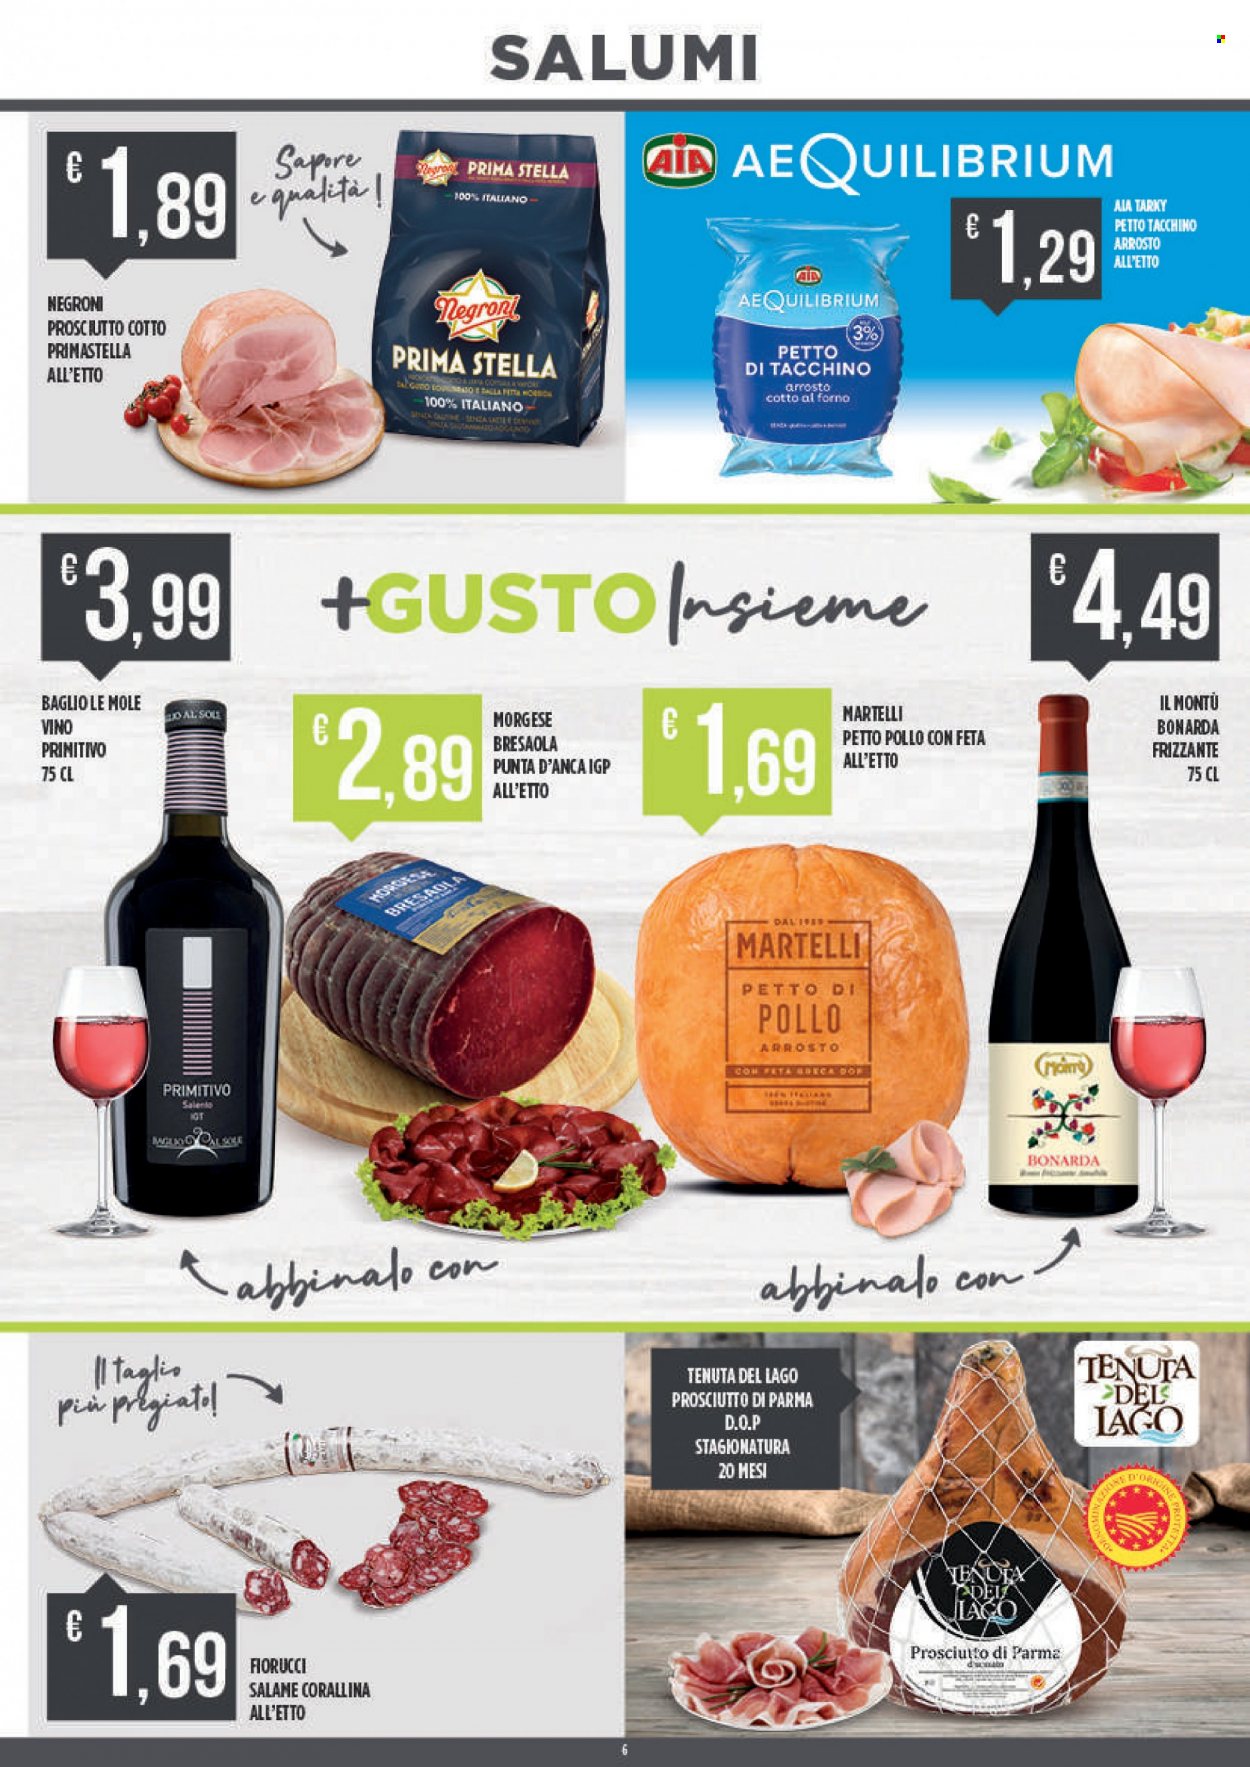 thumbnail - Volantino Euroesse - 5/6/2023 - 18/6/2023 - Prodotti in offerta - petto di pollo, petto di tacchino, AIA, tacchino arrosto, prosciutto, Prosciutto di Parma, bresaola, Fiorucci, prosciutto cotto, petto di pollo arrosto, vino rosso, Primitivo, vino. Pagina 6.